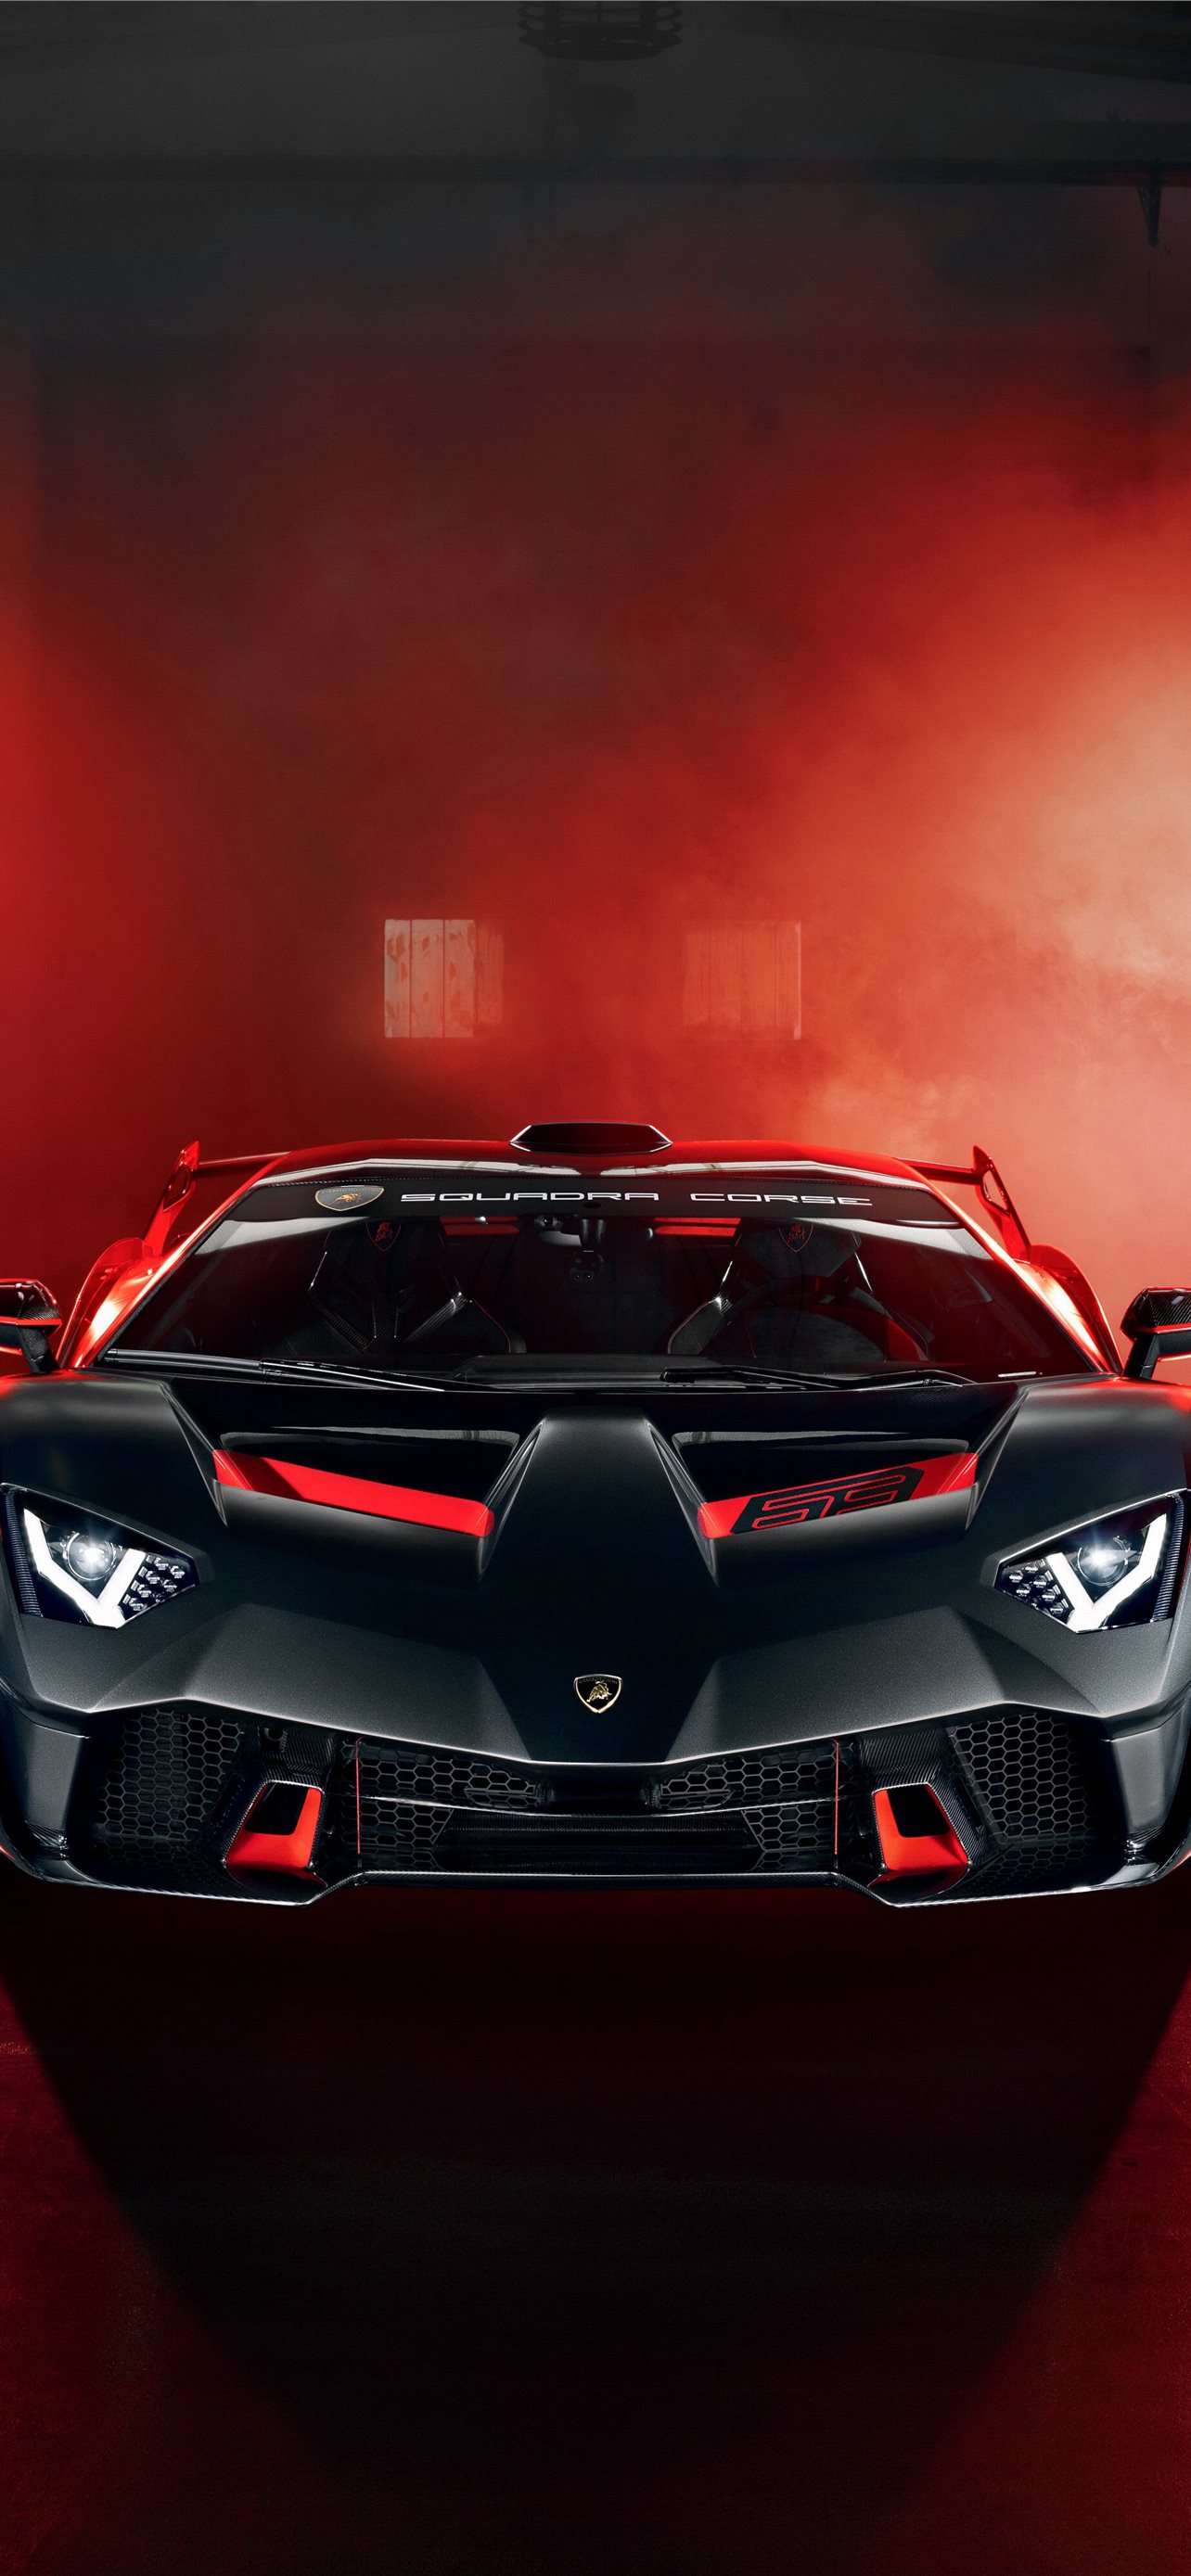 Hình nền Lamborghini: Bạn muốn biến màn hình của mình thành một tác phẩm nghệ thuật hớp hồn? Hãy chọn một bức hình nền Lamborghini cực kì đẹp mắt và tràn đầy sức hút. Chiếc siêu xe Lamborghini luôn đẹp một cách hoàn hảo và sẽ không làm bạn thất vọng.